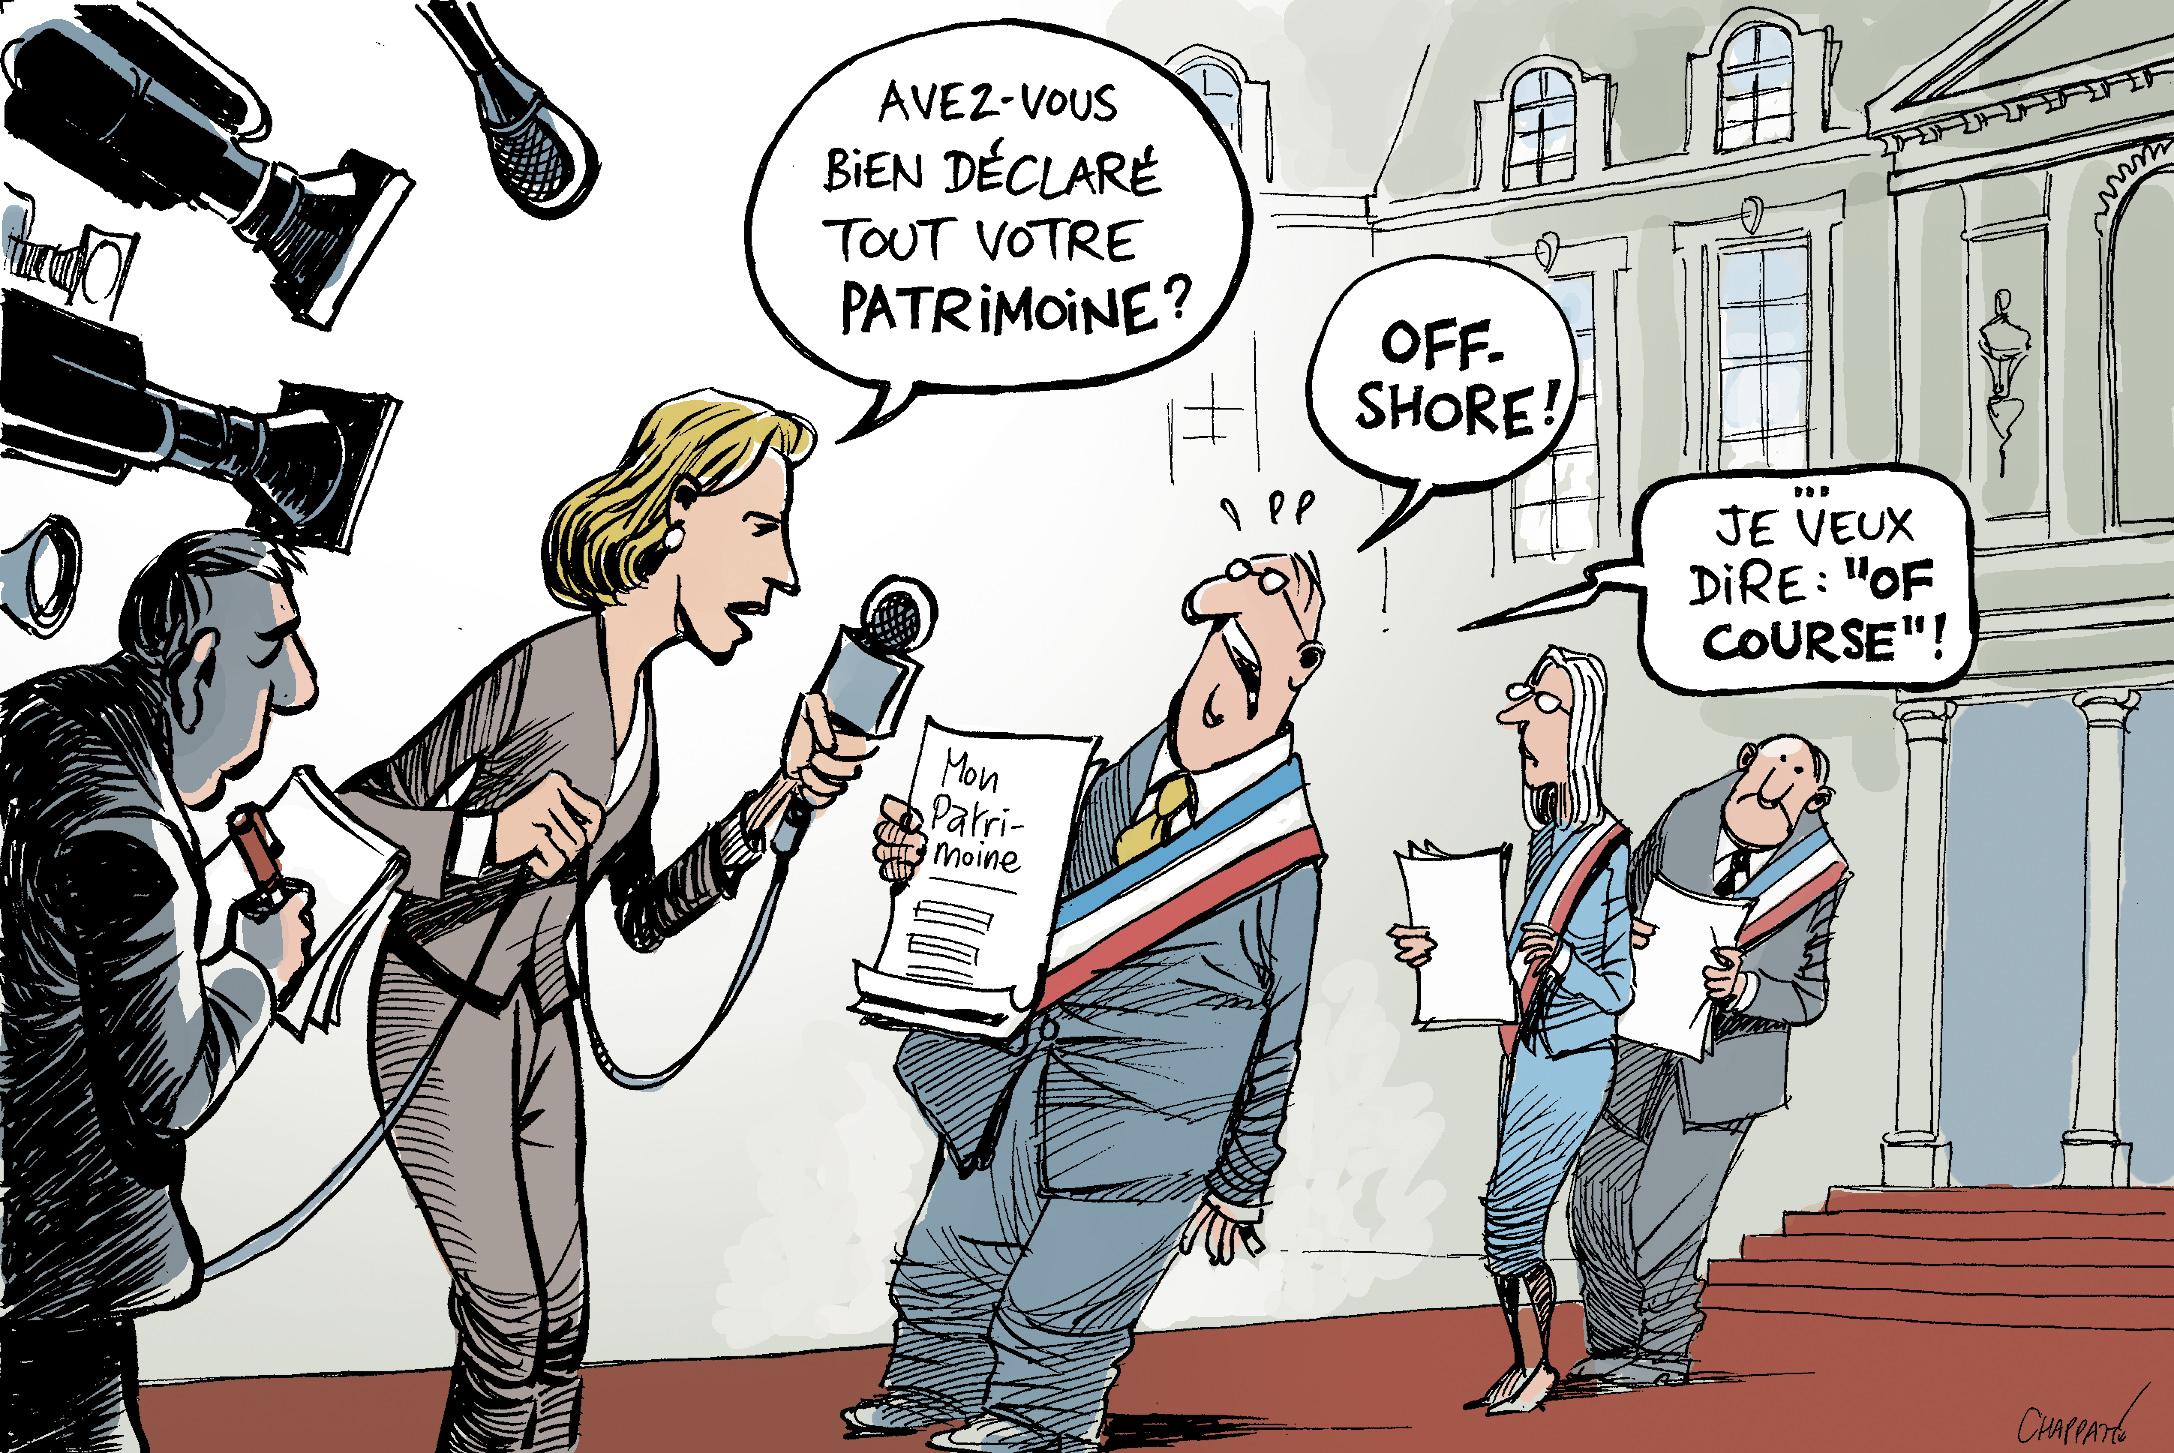 Les ministres français dévoilent leur patrimoine